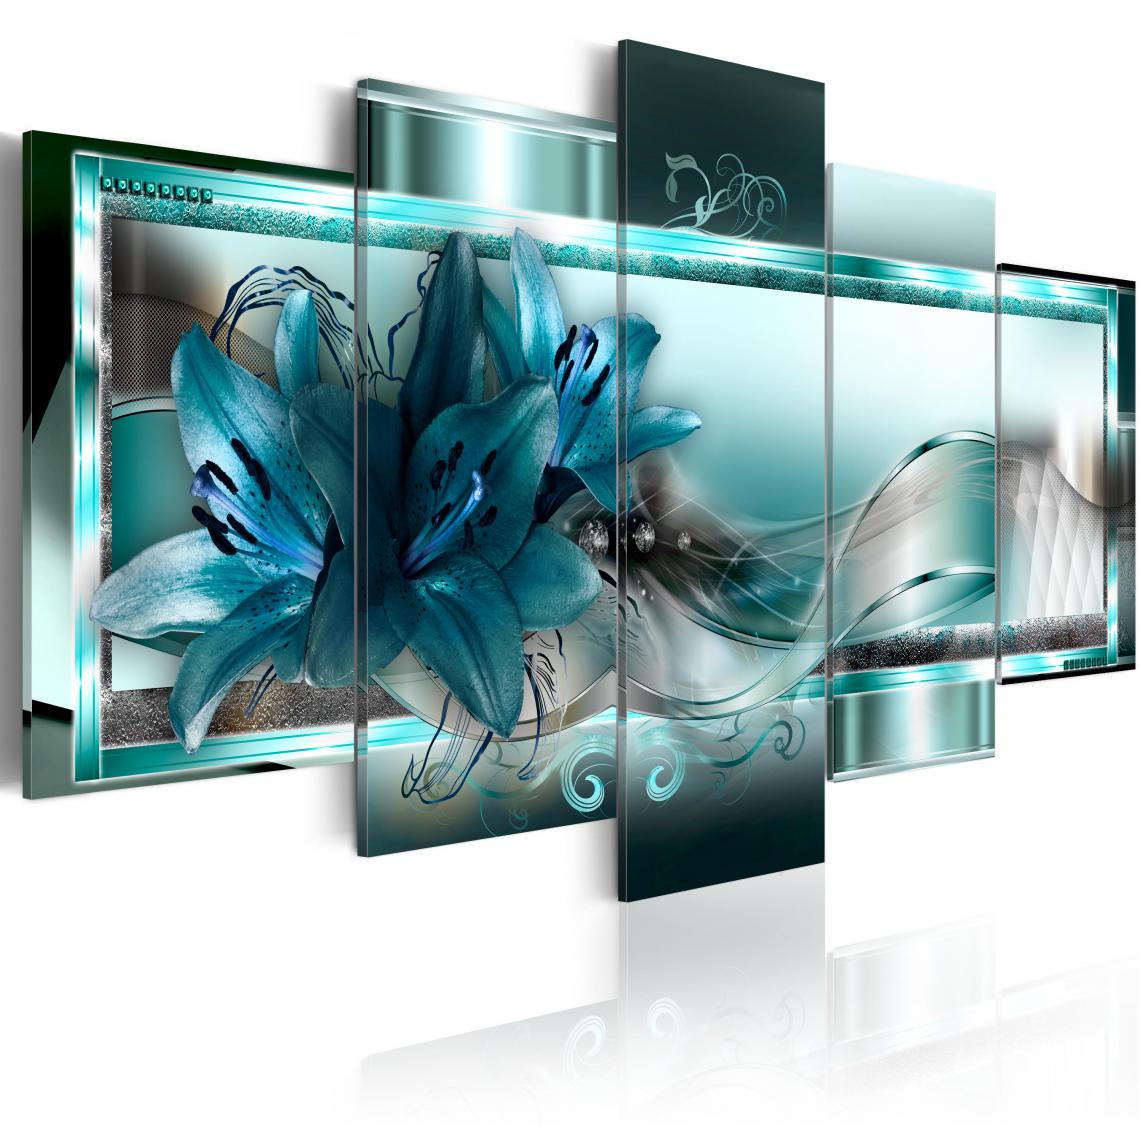 Decoshop26 - Tableau sur toile en 5 panneaux décoration murale image imprimée cadre en bois à suspendre Lys bleu ciel 200x100 cm 11_0000886 - Tableaux, peintures